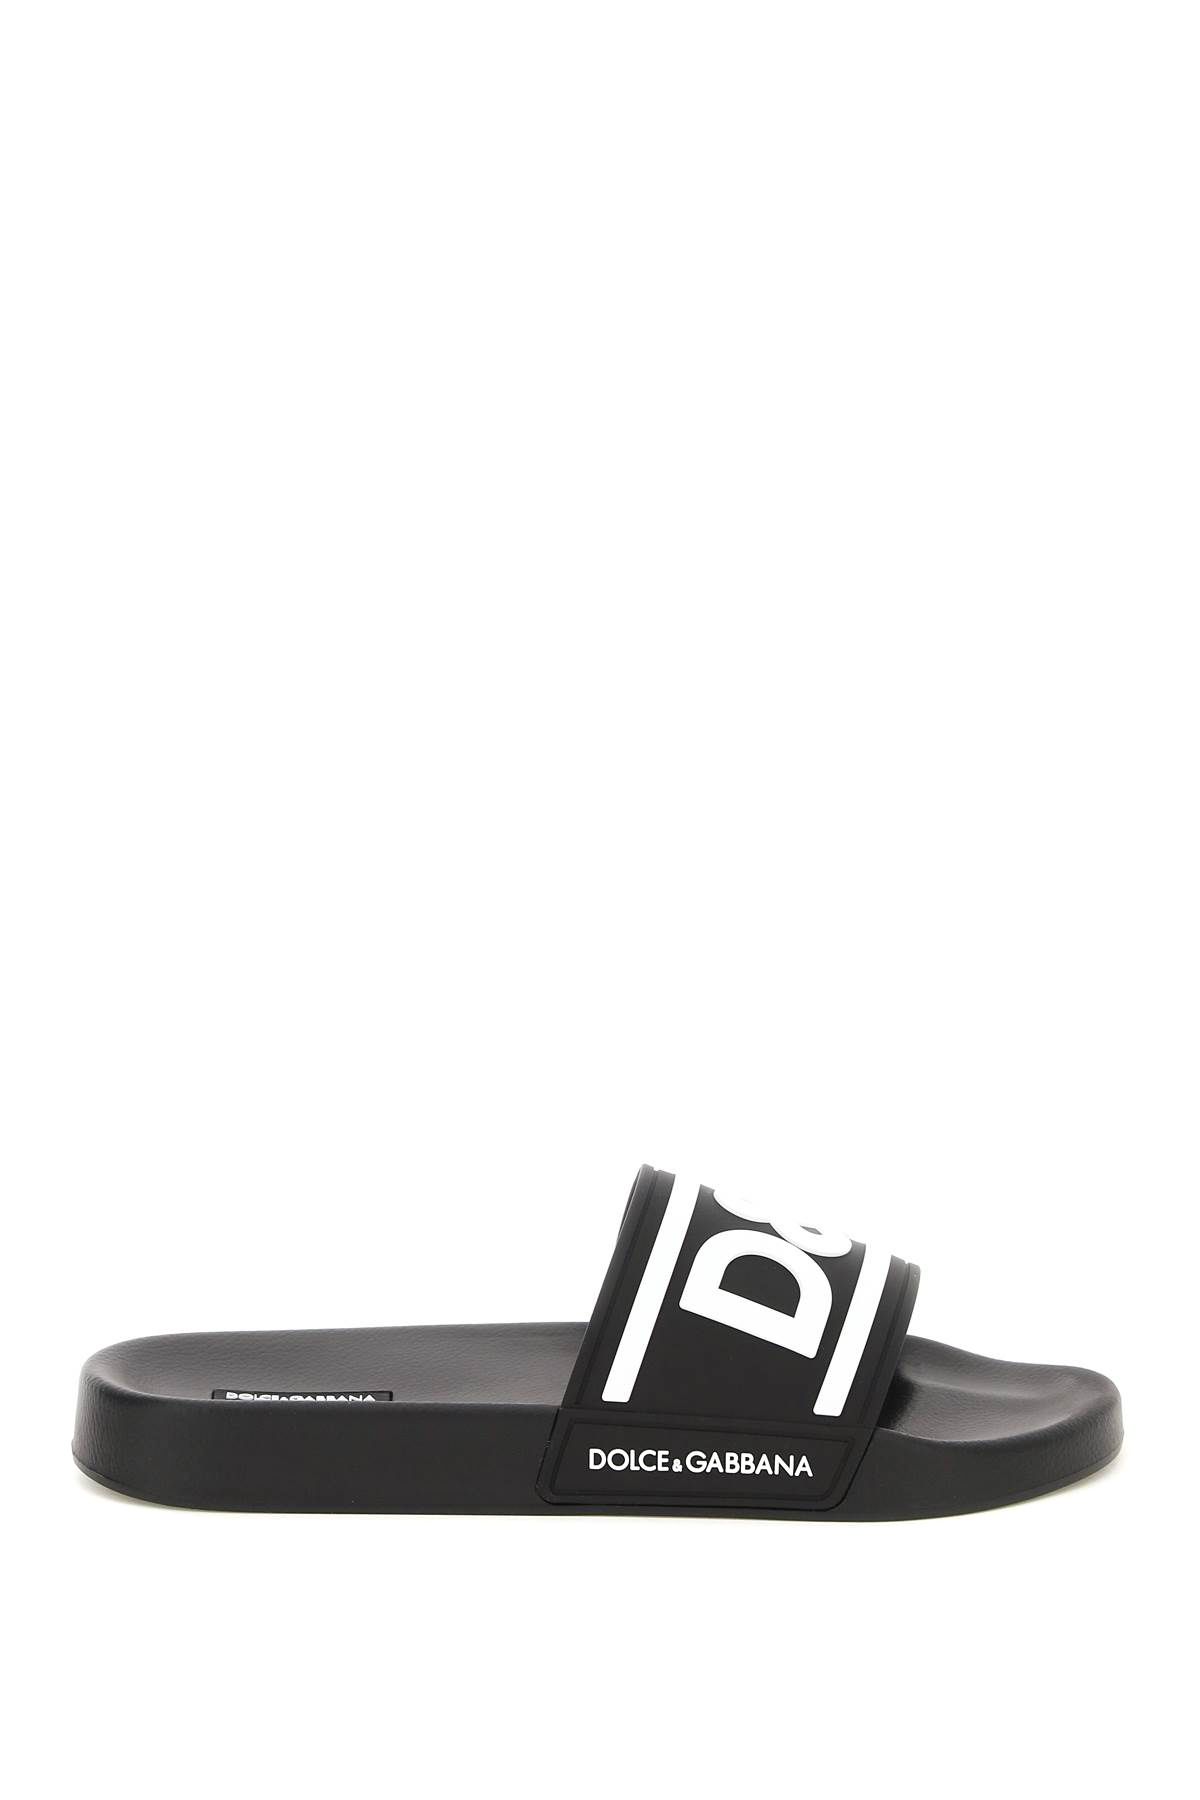 Dolce & Gabbana DOLCE & GABBANA logo rubber slides